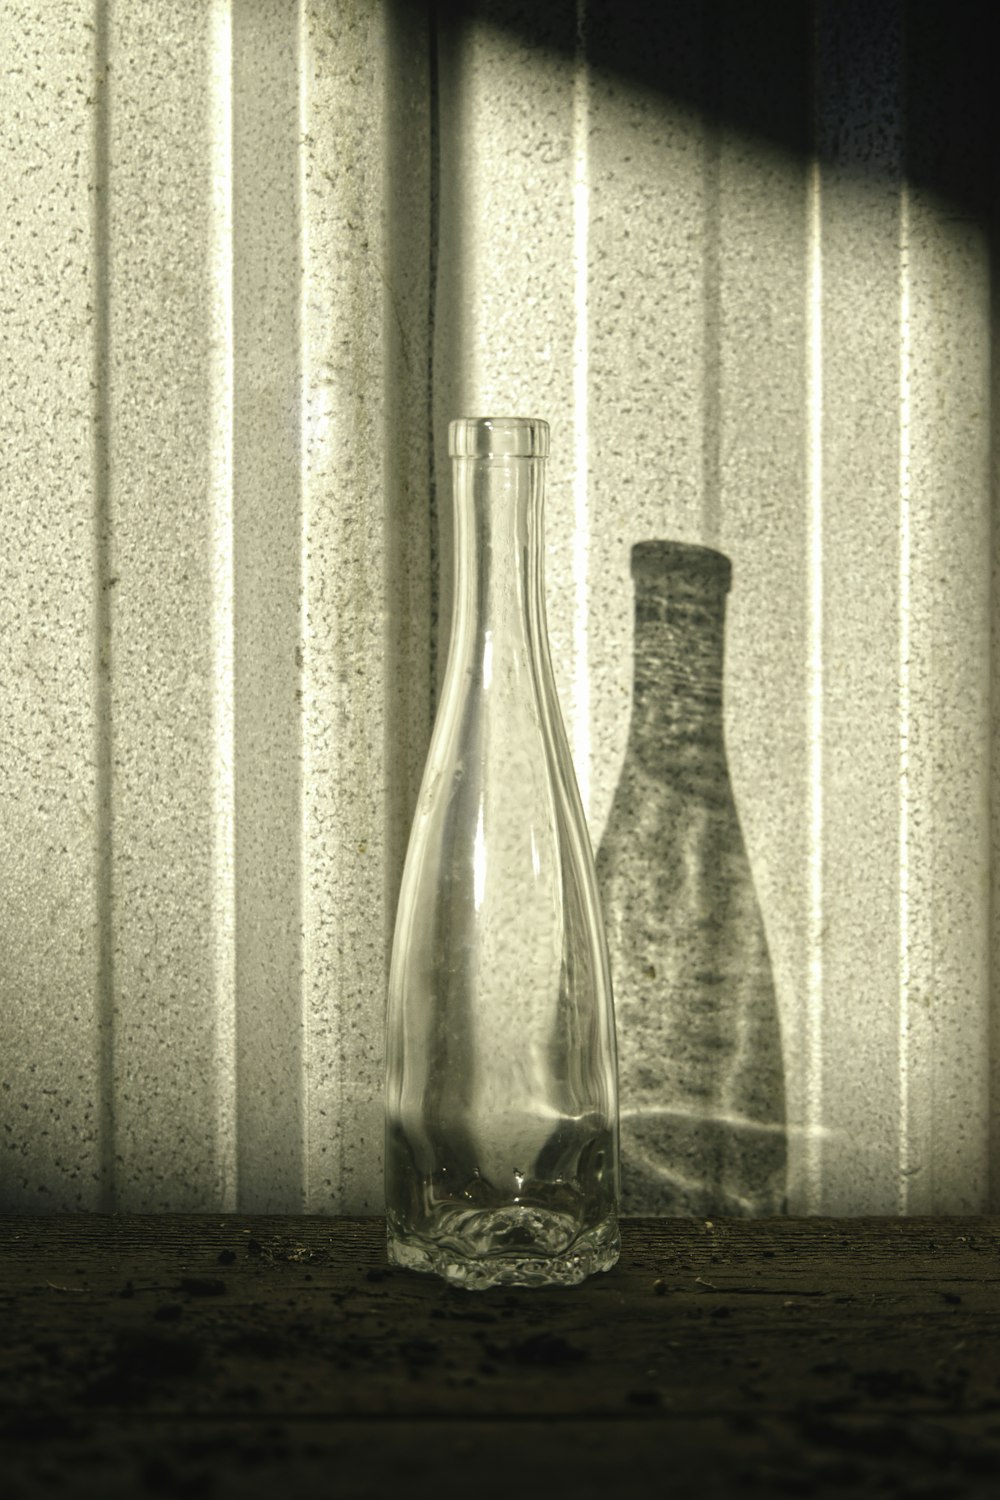 foto in scala di grigi della bottiglia di vetro